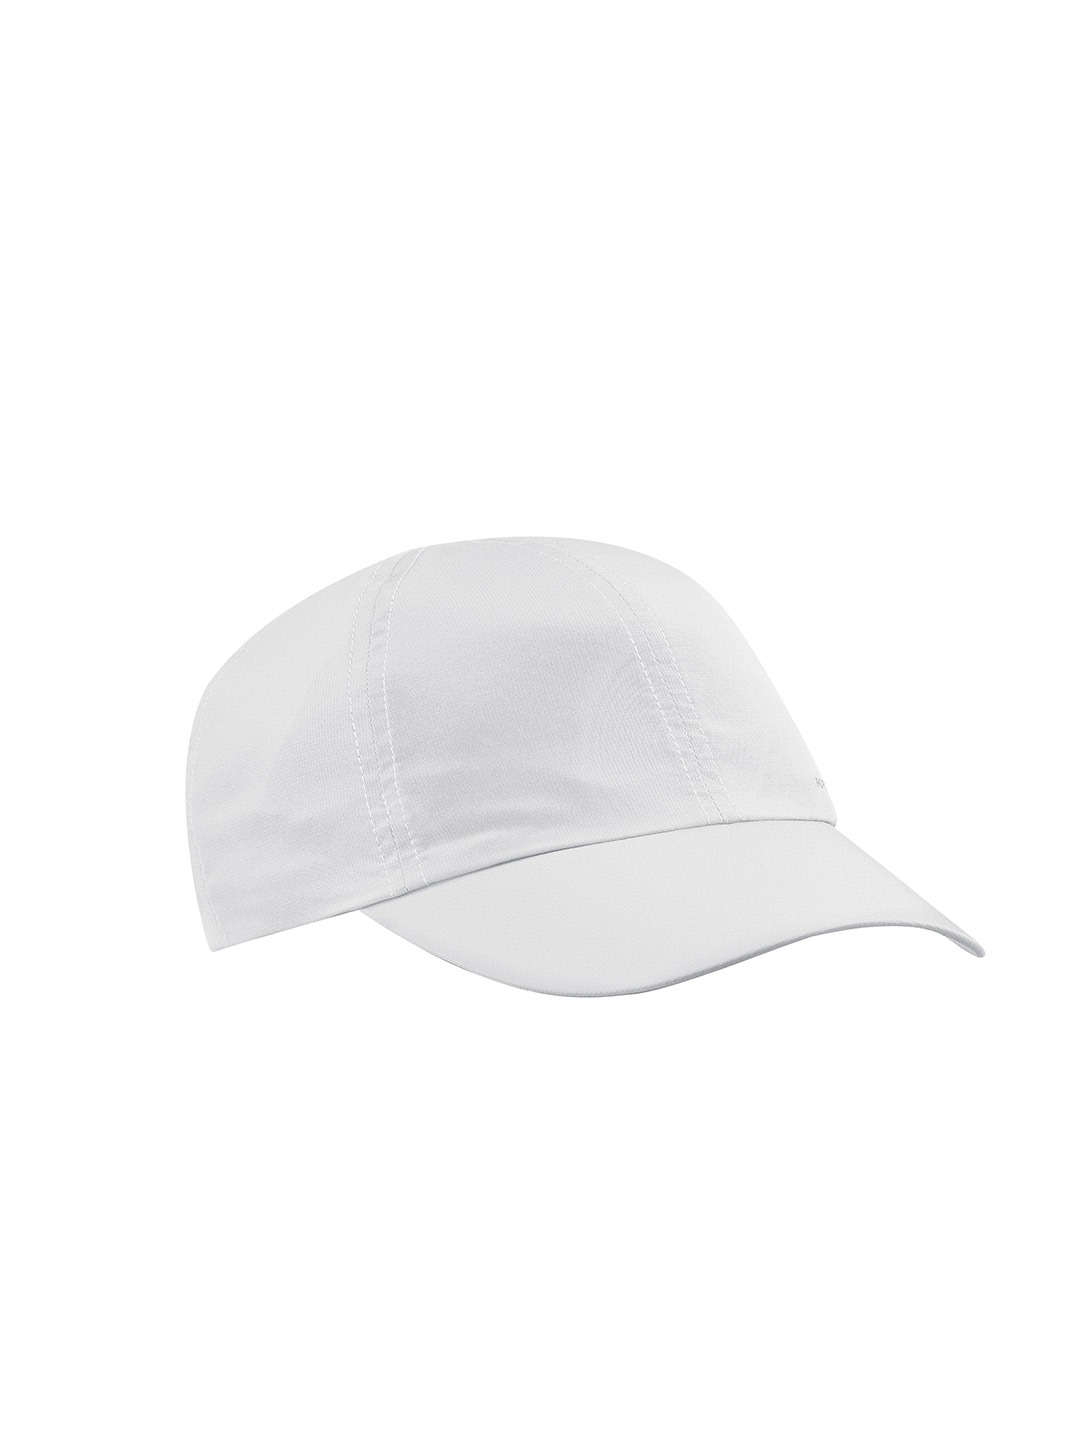 Accessories Caps | FORCLAZ By Decathlon Unisex Light Grey Quick Dry Cap - CL29184